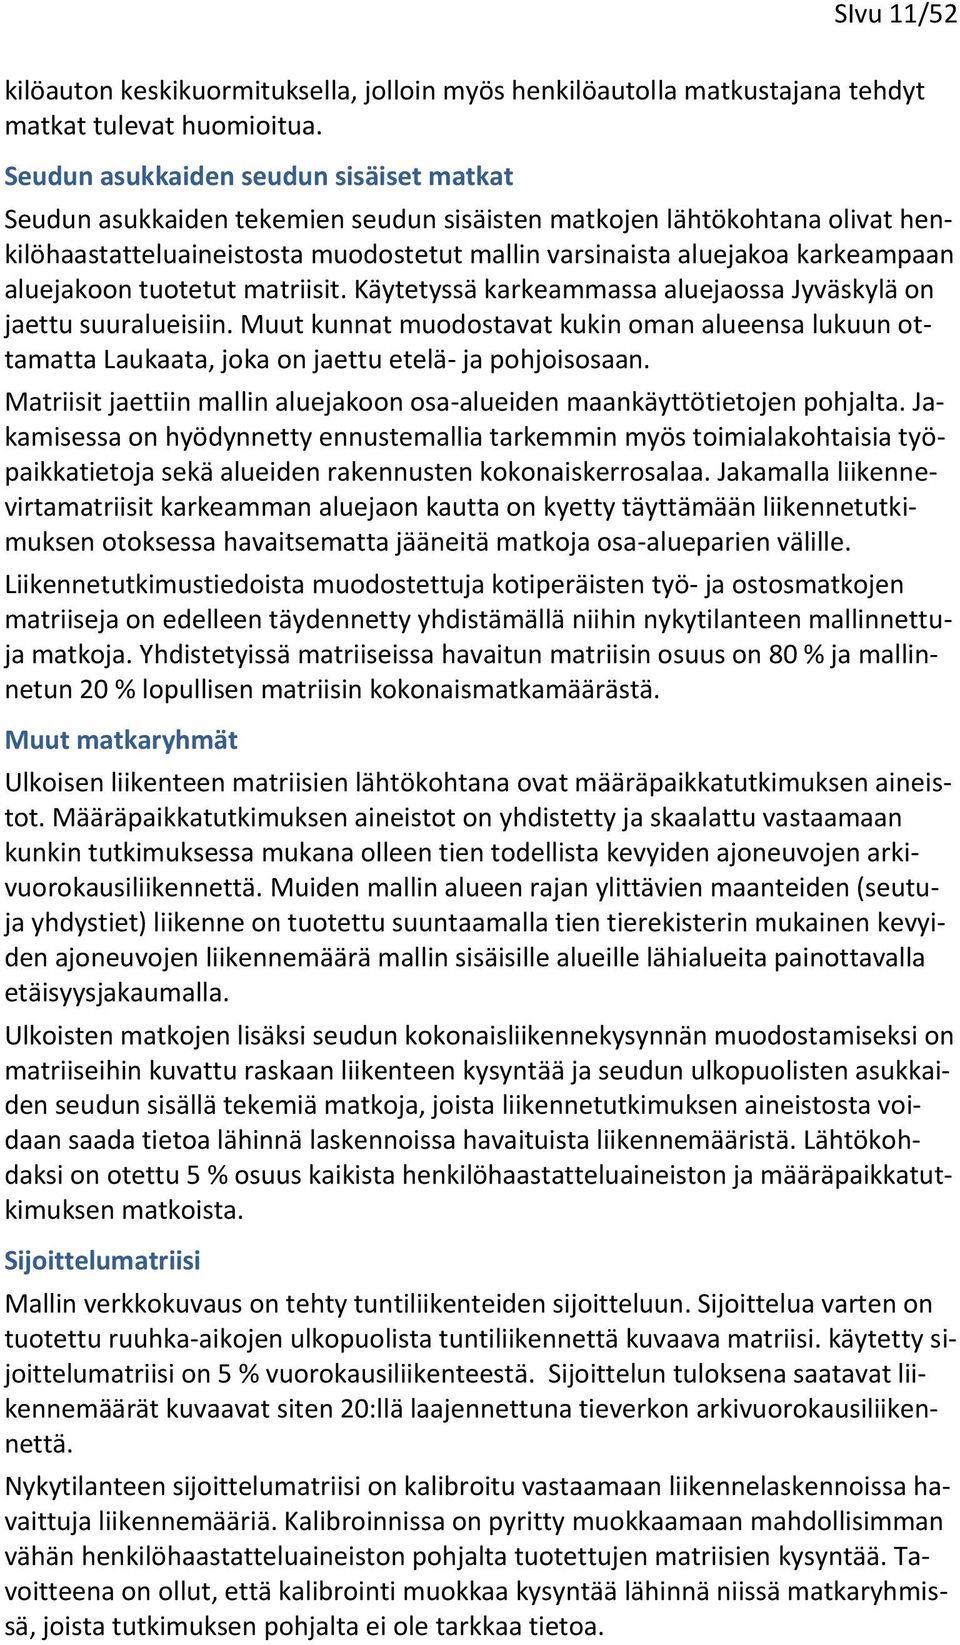 aluejakoon tuotetut matriisit. Käytetyssä karkeammassa aluejaossa Jyväskylä on jaettu suuralueisiin.